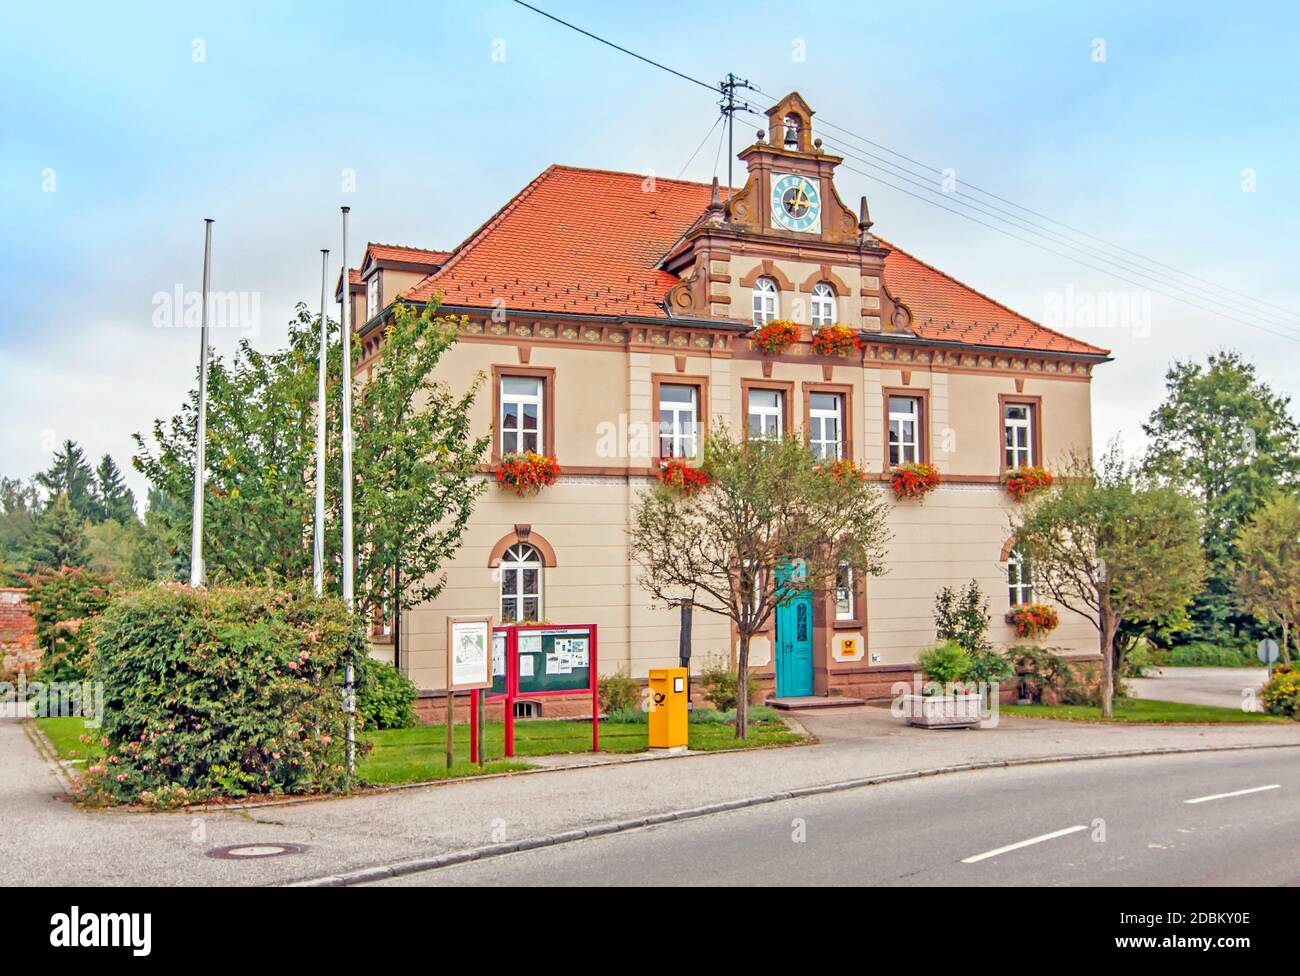 Rathaus Gemeinde Wald, Landkreis Sigmaringen Stock Photo